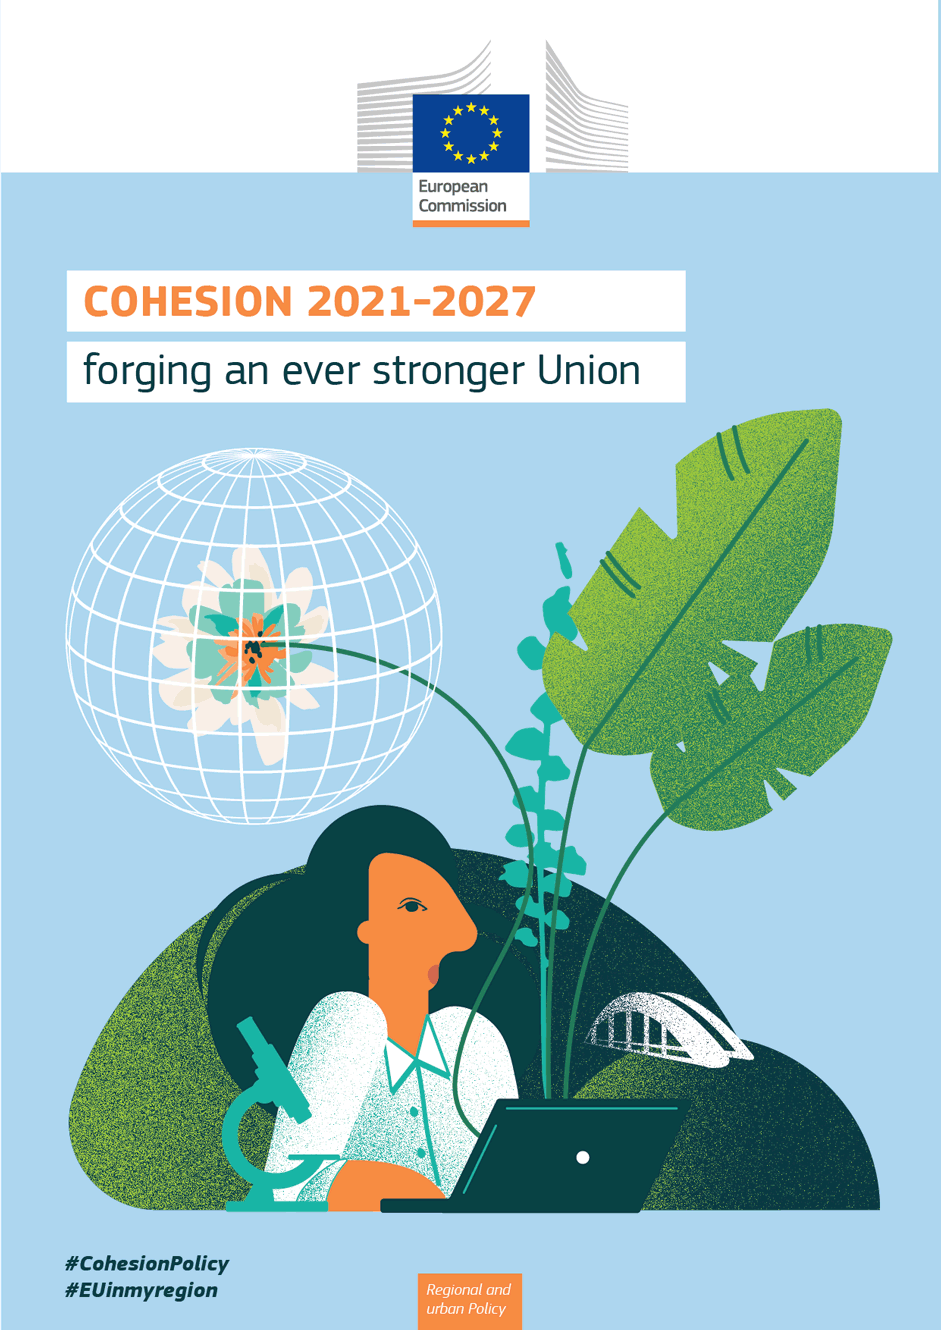 Uniós kohéziós politika: várhatóan 1,3 millió munkahely jön létre...